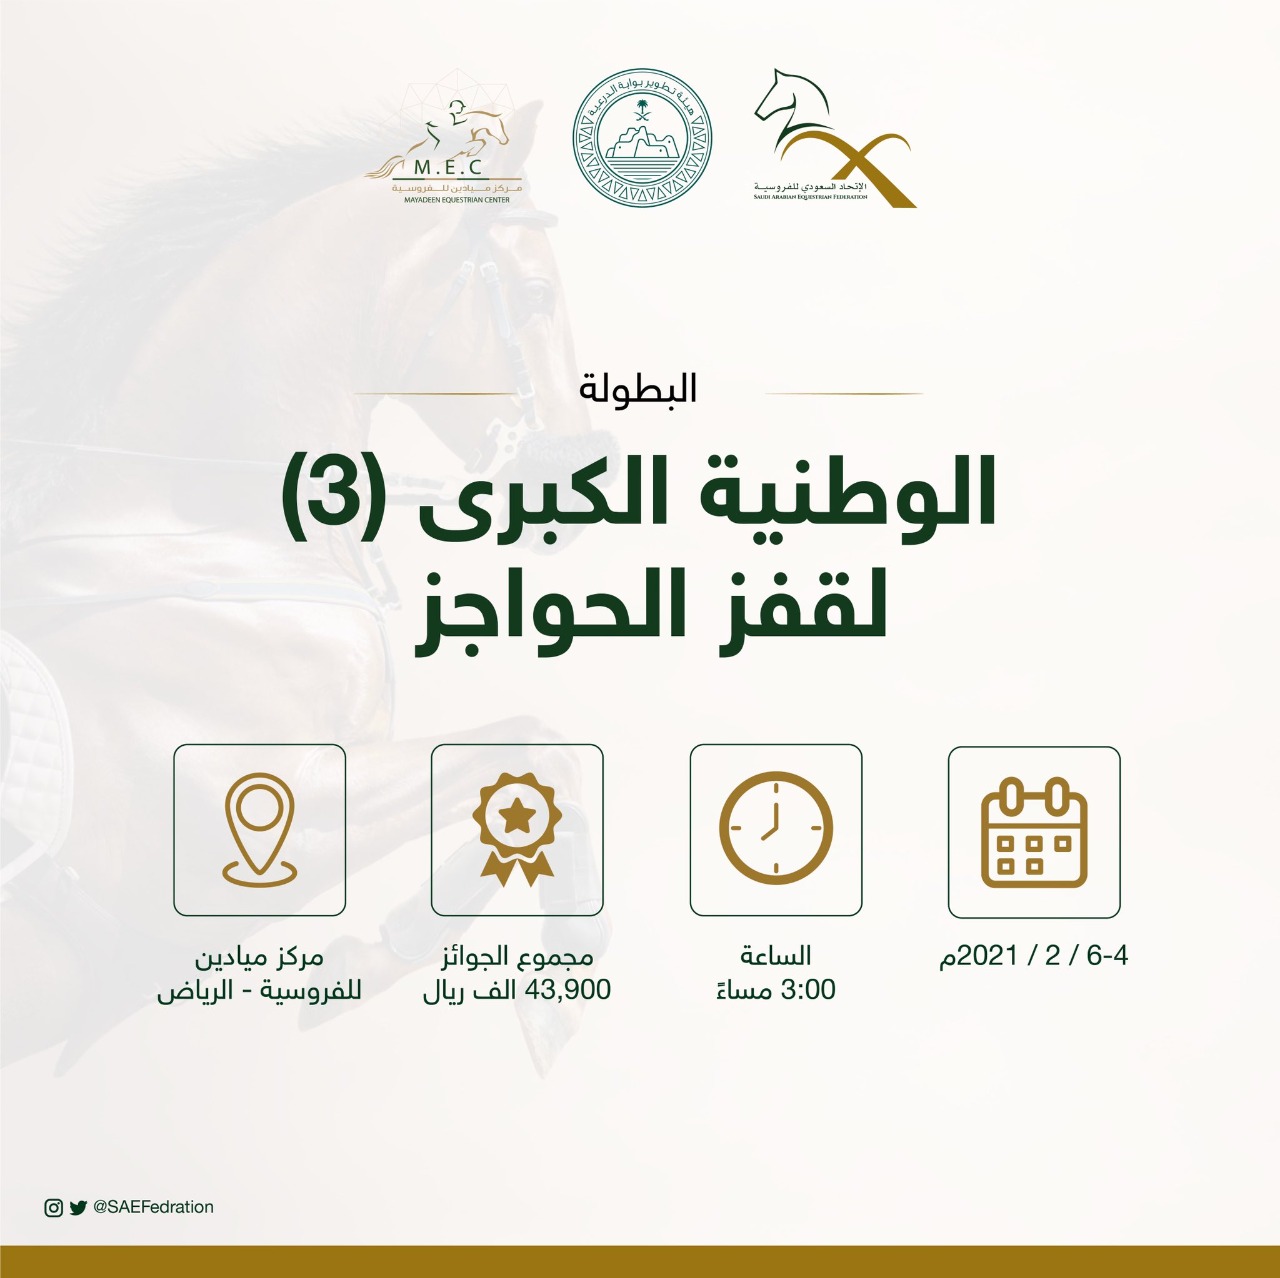 الخميس.. انطلاق البطولة الوطنية الكبرى لقفز الحواجز في السعودية 